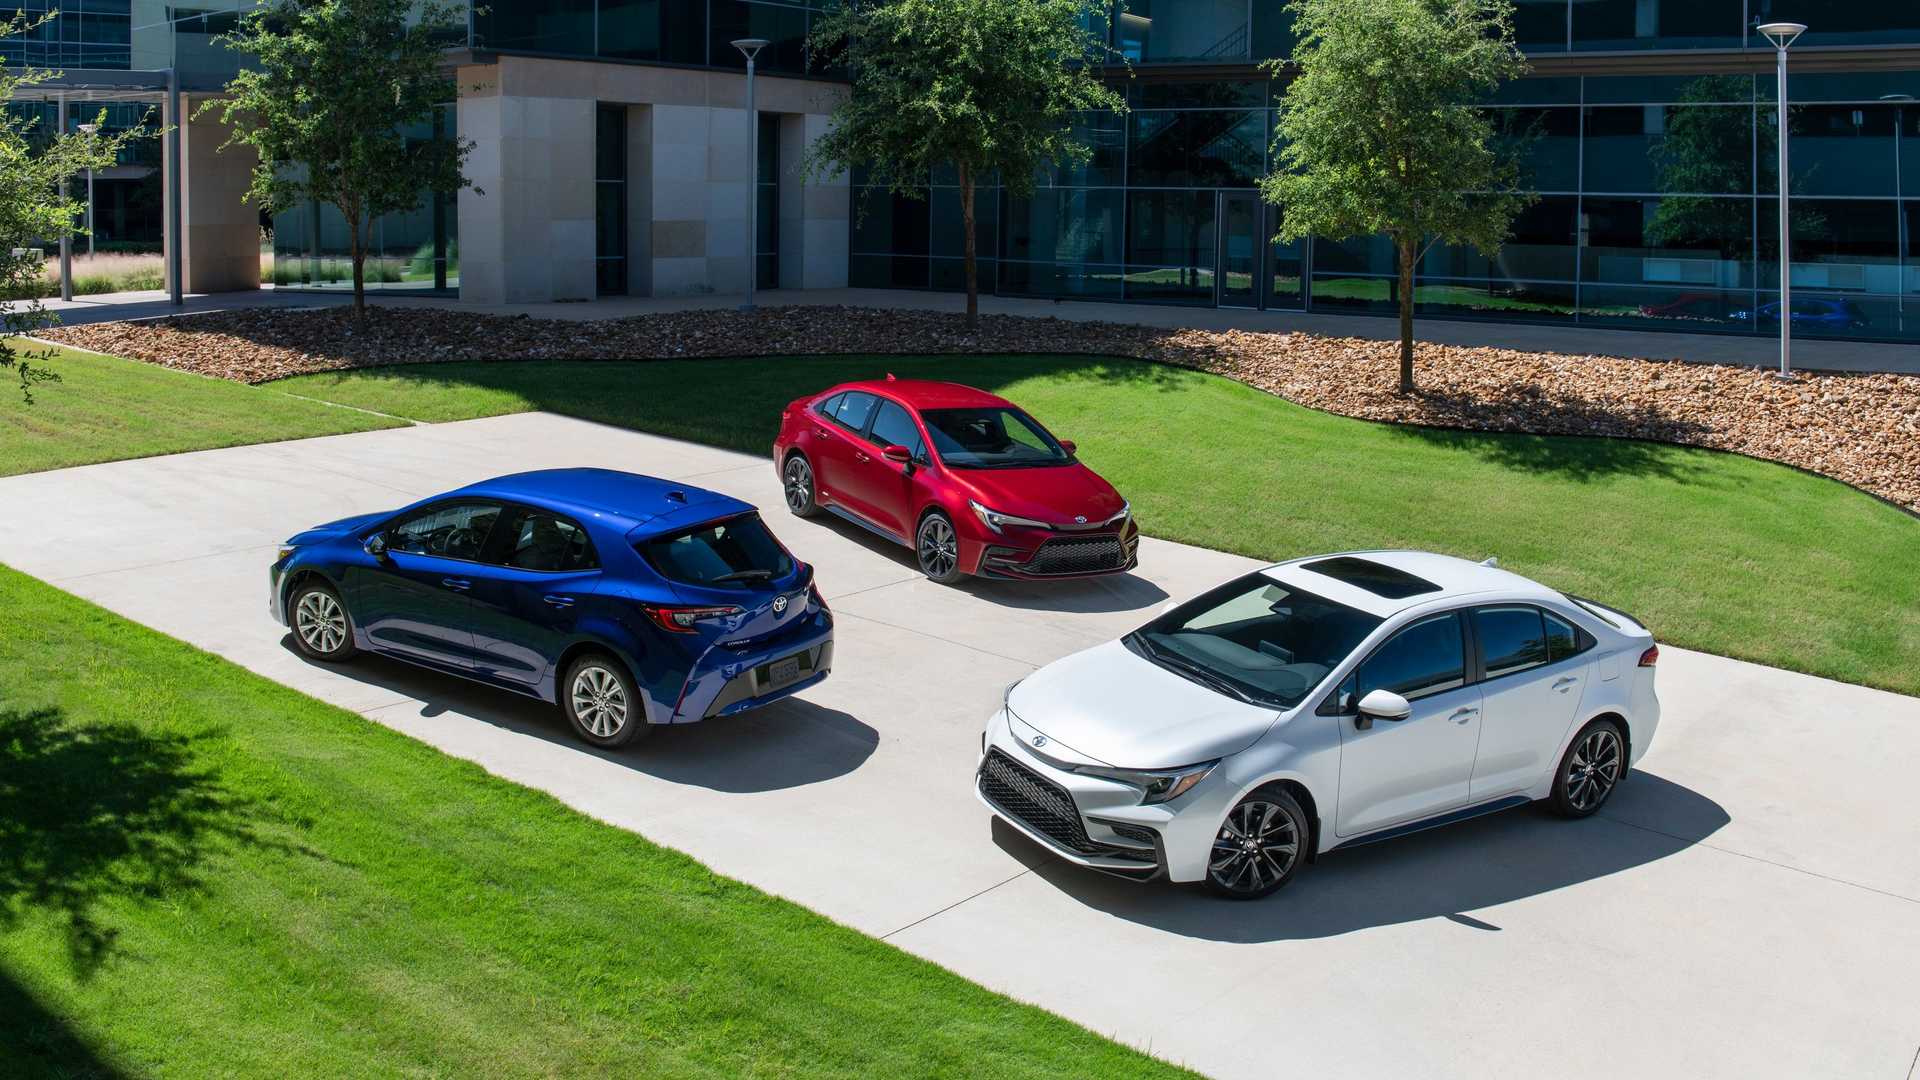 Xe bán chạy nhất thế giới Toyota Corolla nâng cấp nhẹ, giảm giá bản hybrid - Ảnh 2.